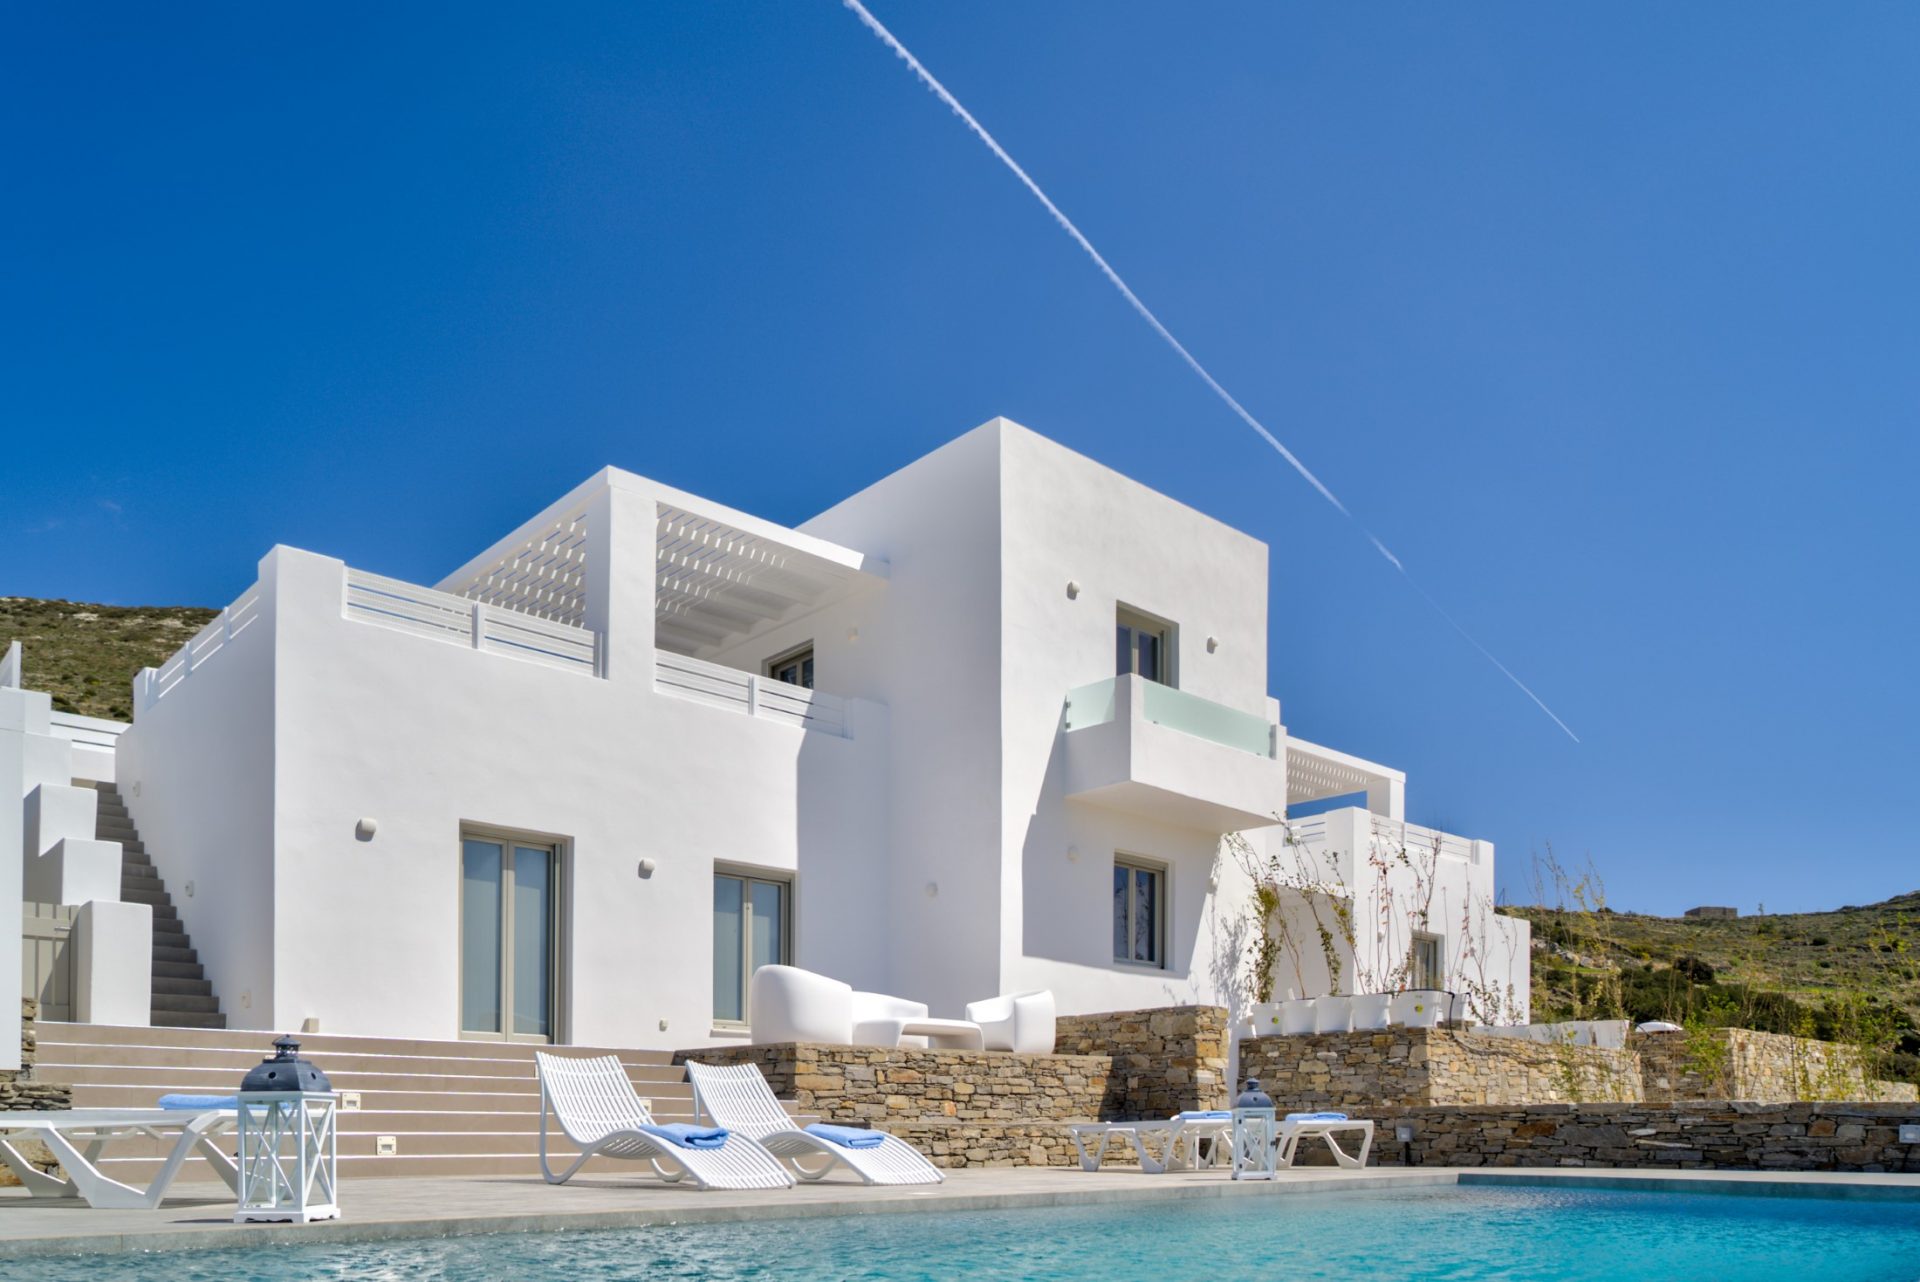 holiday villas in paros greece